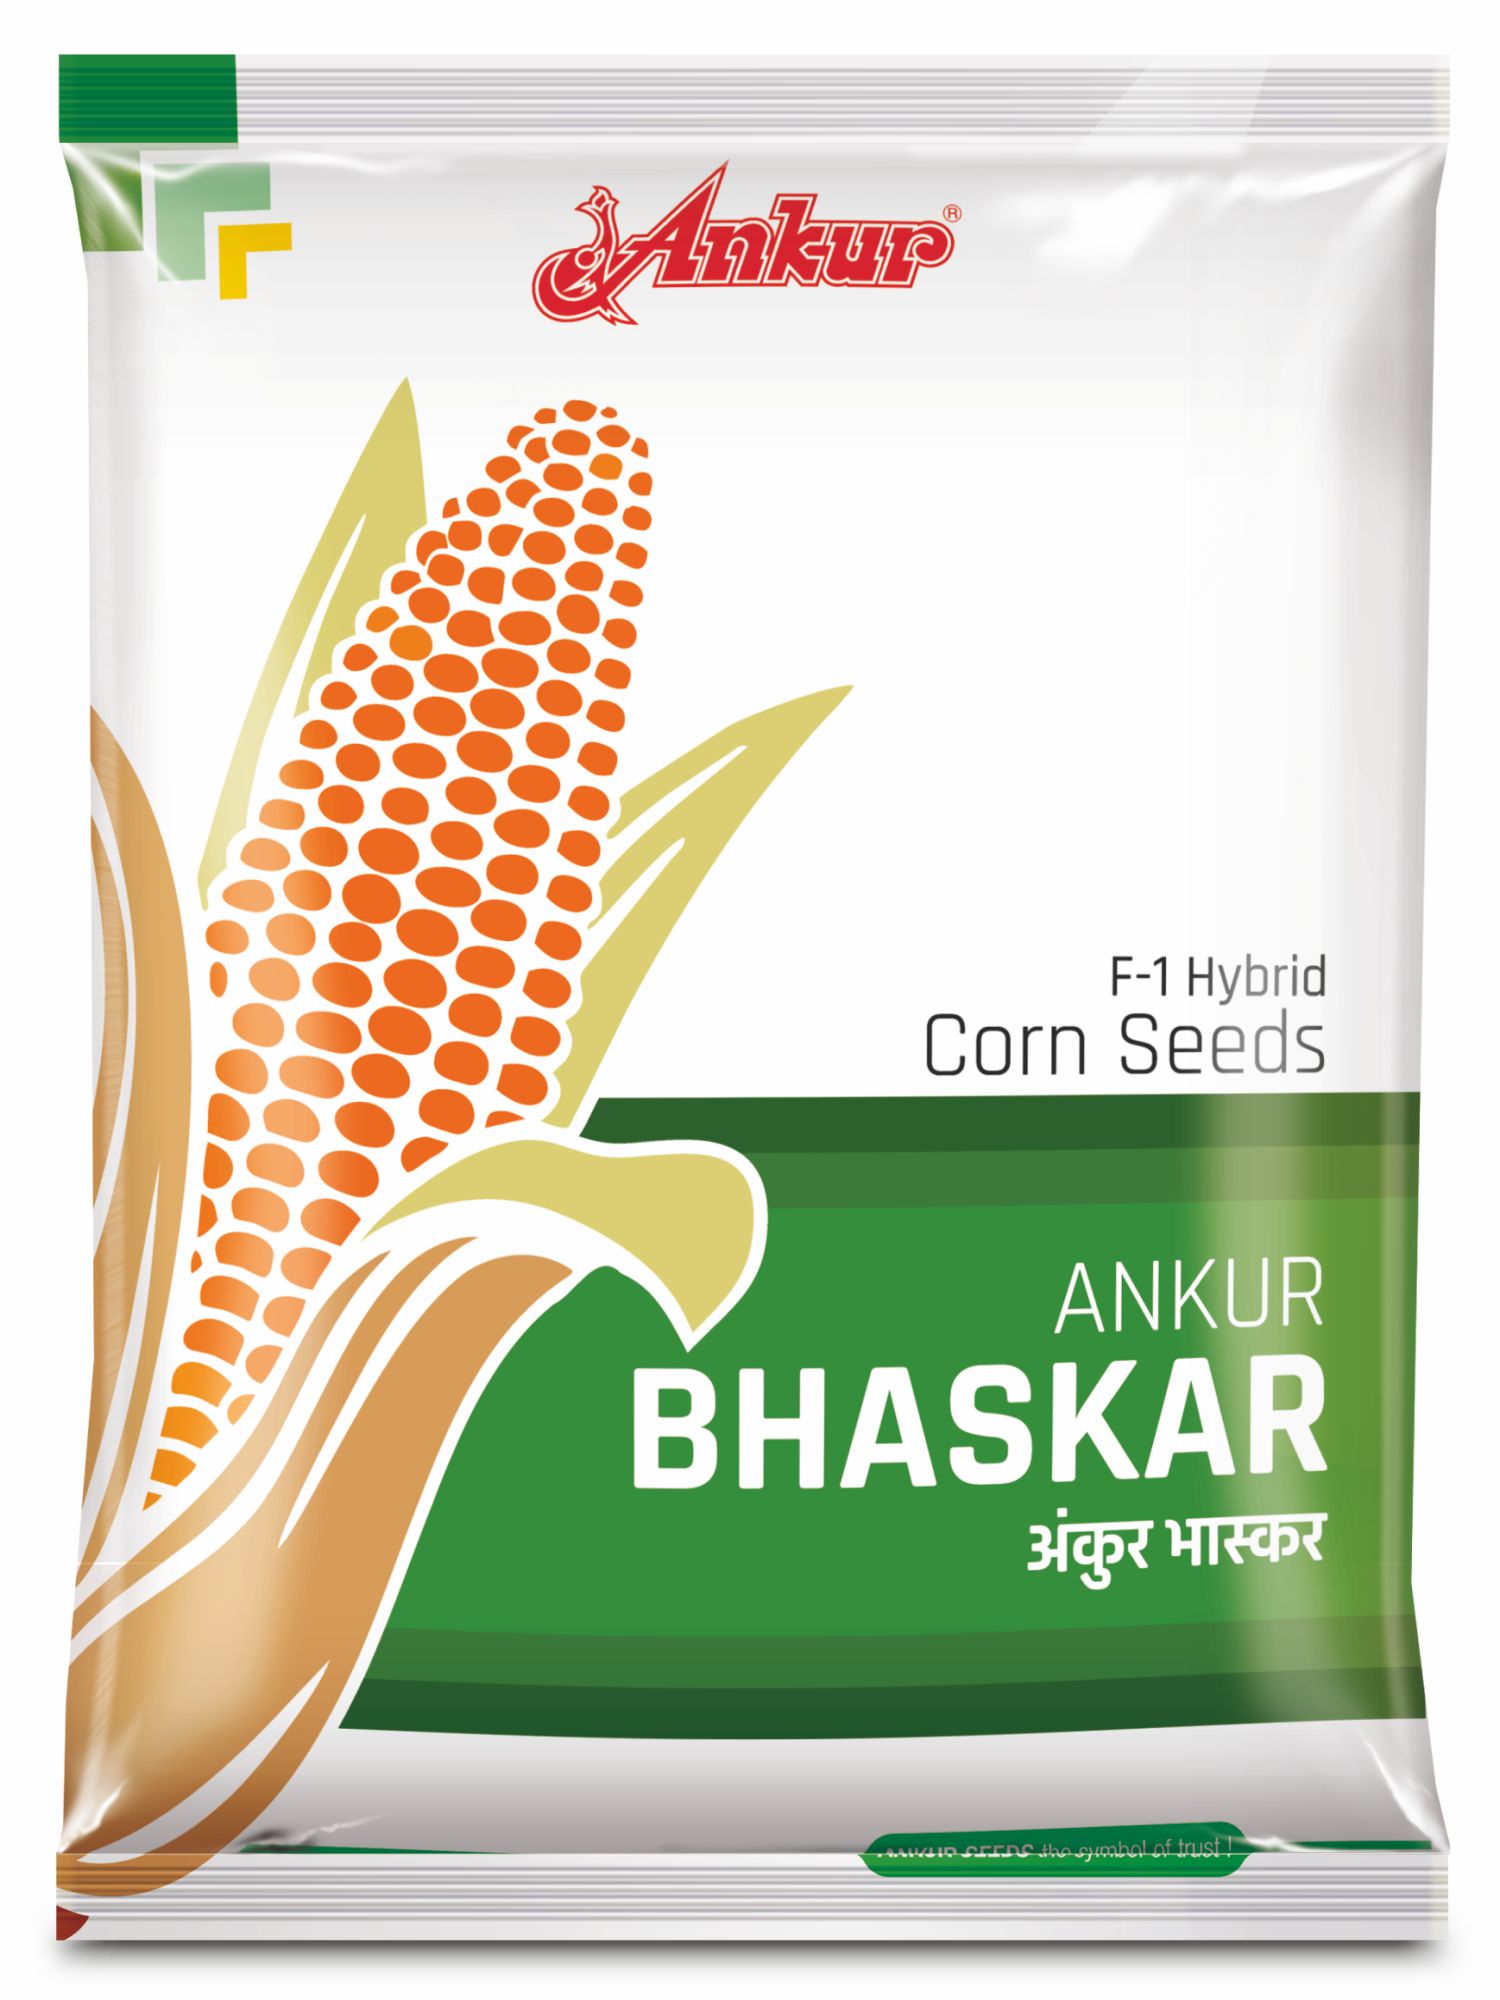 Hy Maize Ankur Bhaskar 